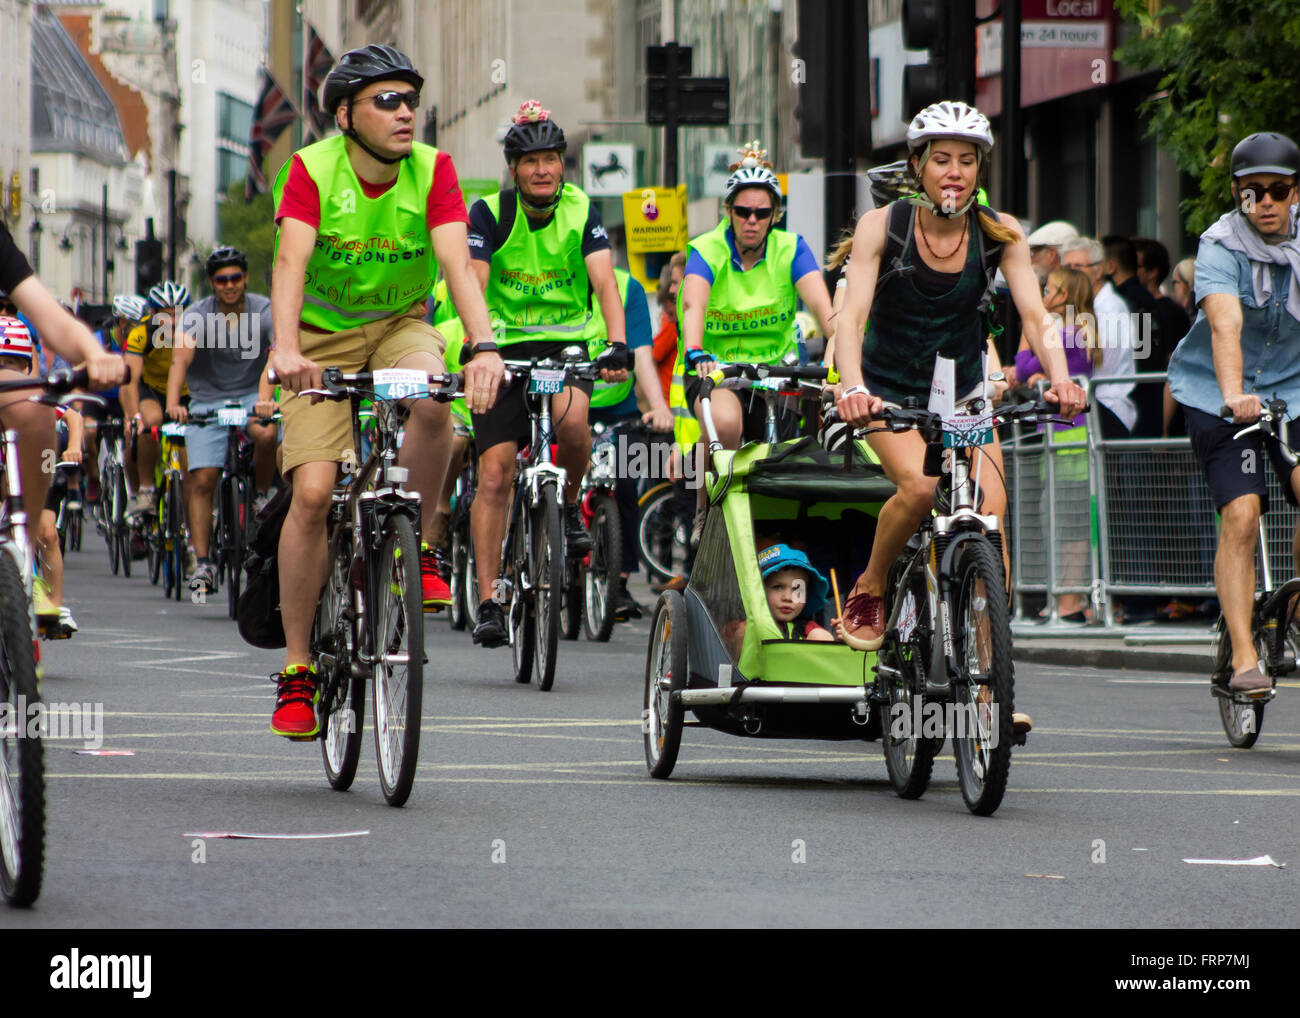 RideLondon manifestazione ciclistica - Londra 2015 ciclisti a 'RideLondon 2015'; un festival in bicicletta con freeclyling pubblica. Foto Stock